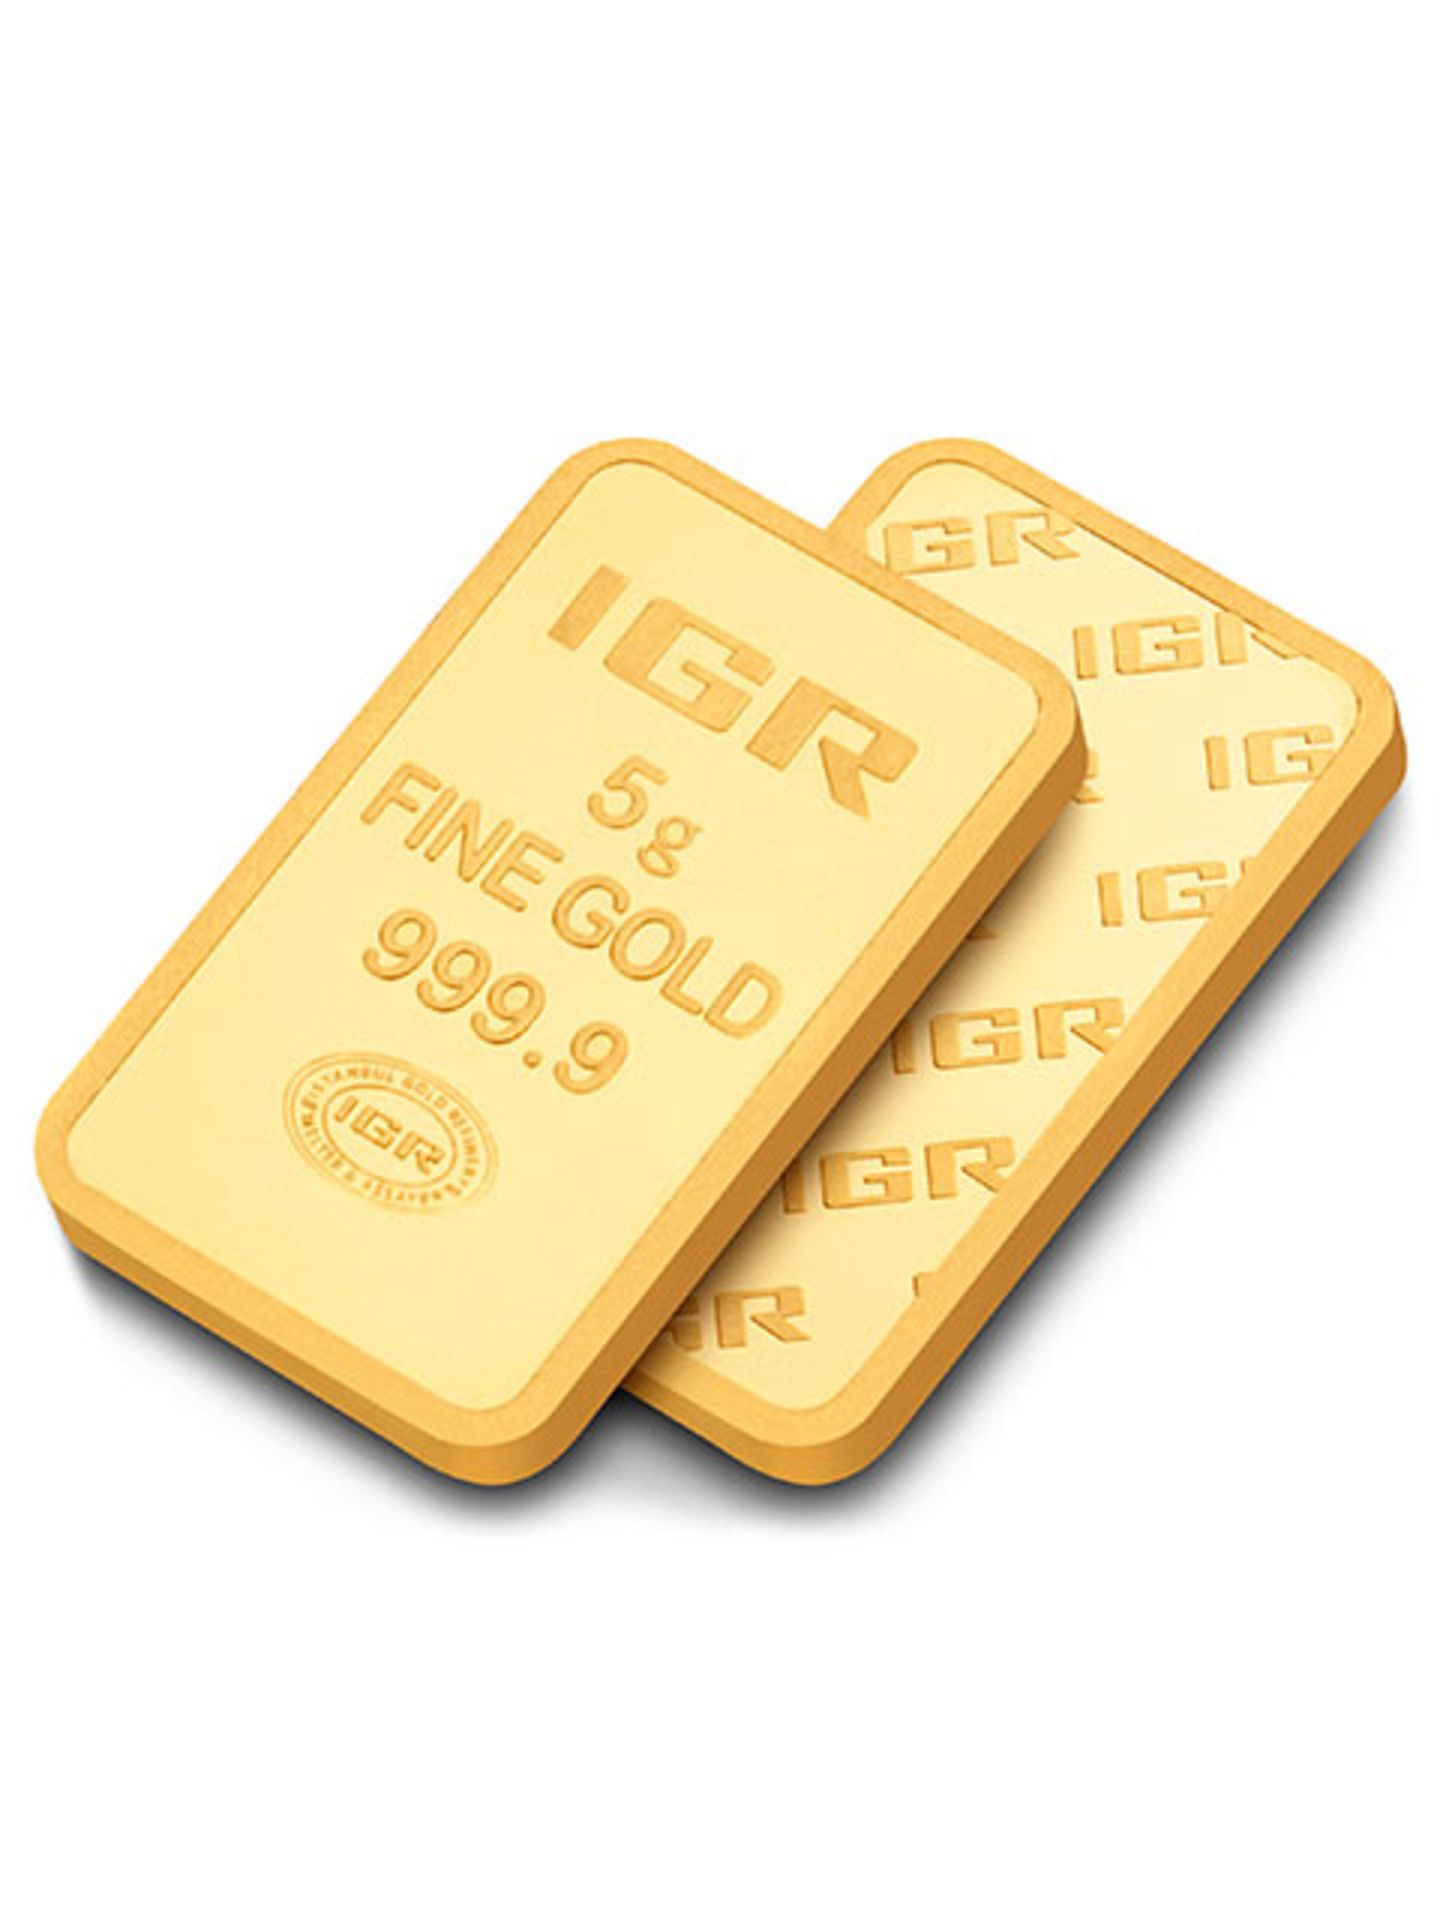 5 gr Gold Bullion Investment Bar